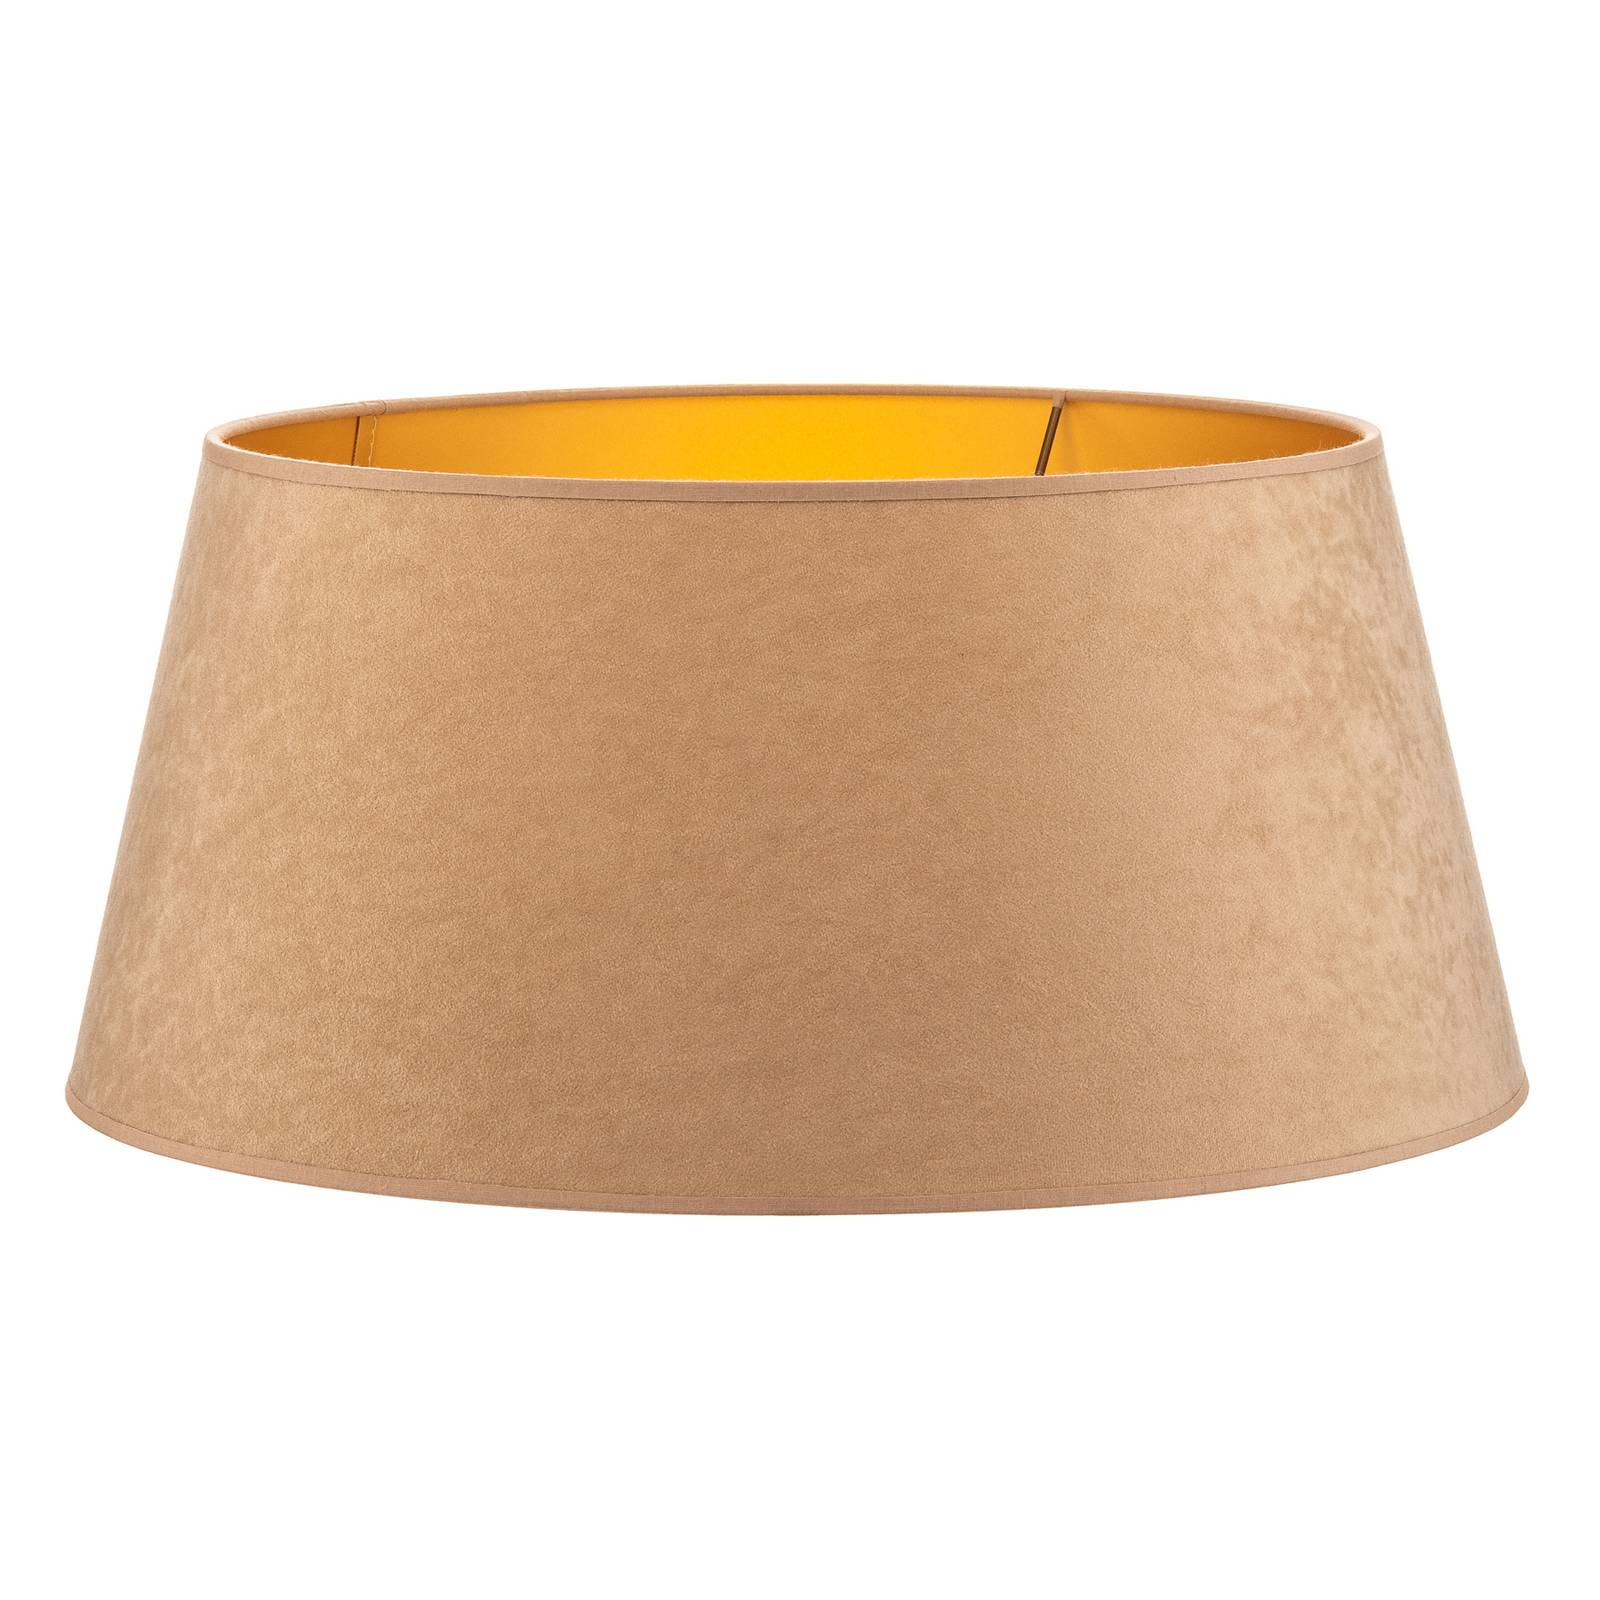 Cone lámpaernyő 25,5 cm magas, bézs/arany